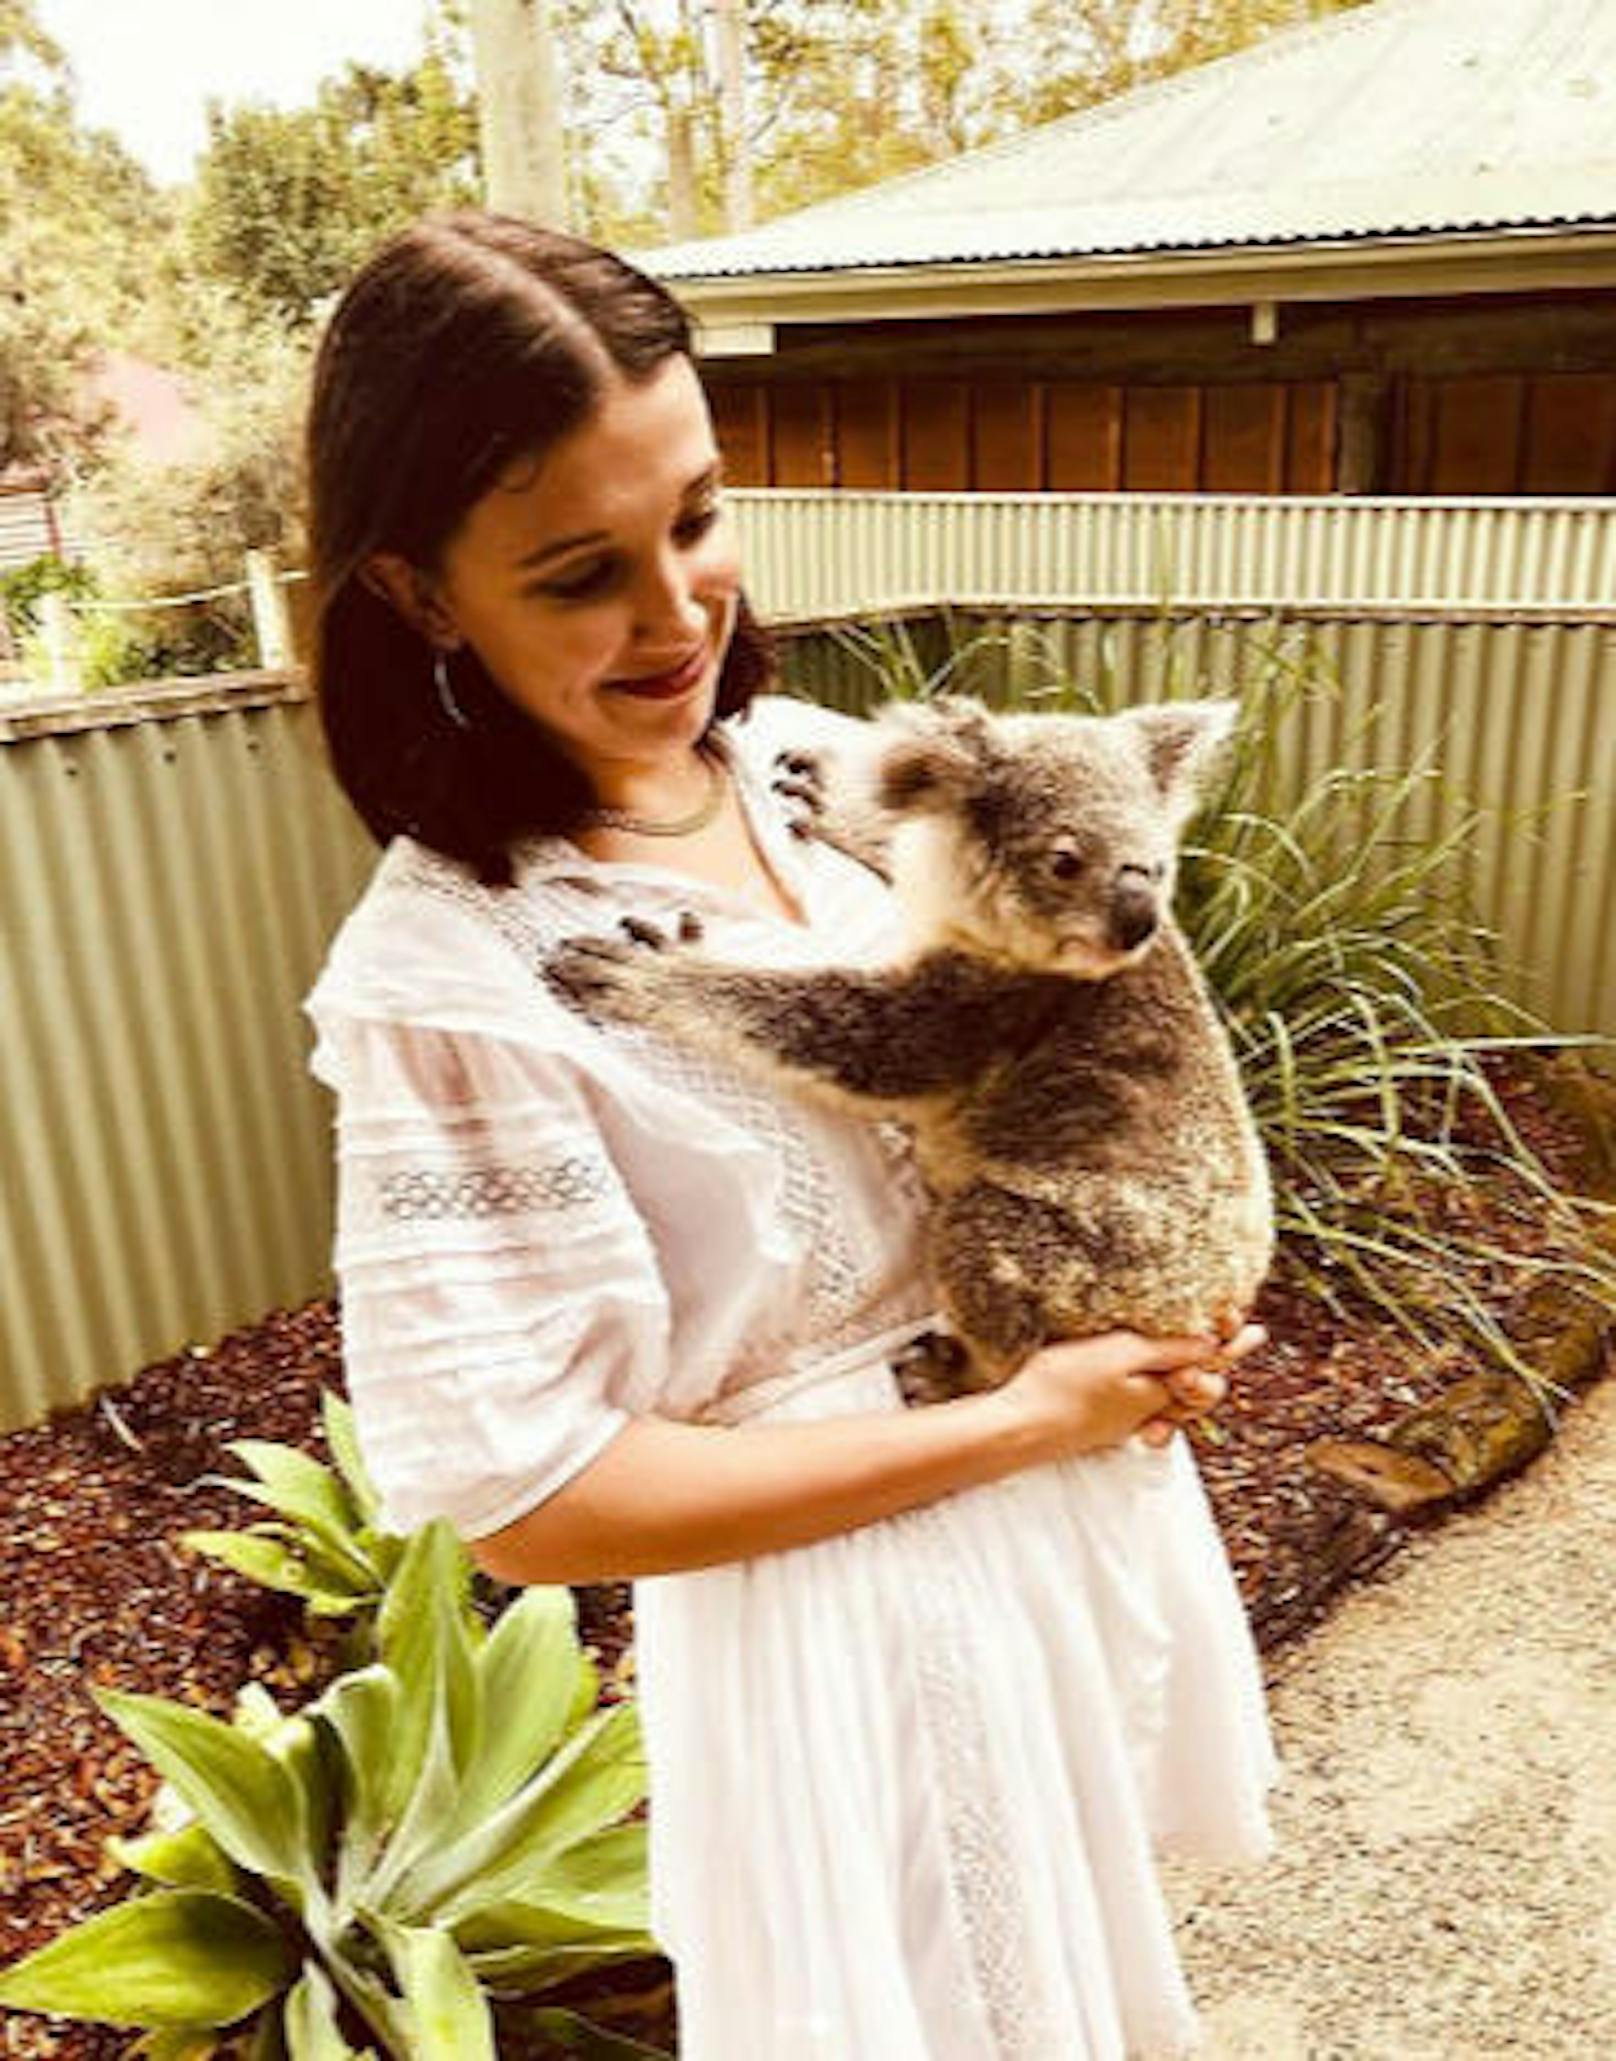 03.03.2018: "Stranger Things"-Star Millie Bobby Brown durfte auf ihrer Australien-Reise mit einem Koala schmusen. "Die Liebe meines Lebens", schrieb sie dazu. 